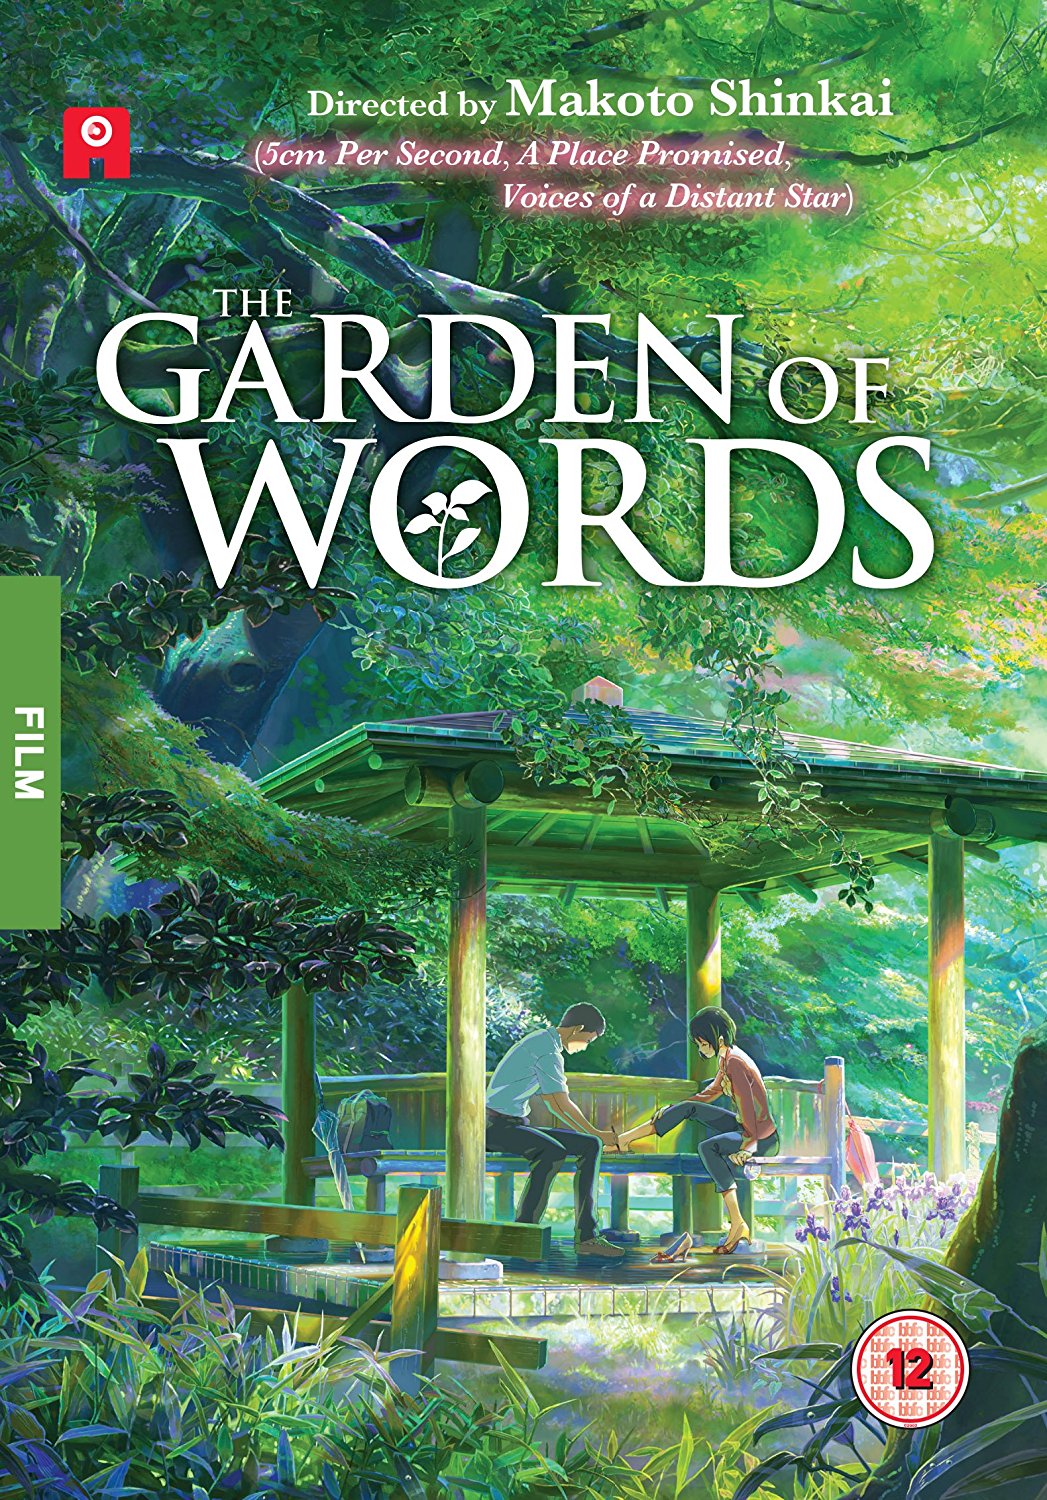 The Garden of Words / Koto no ha no niwa | Makoto Shinkai